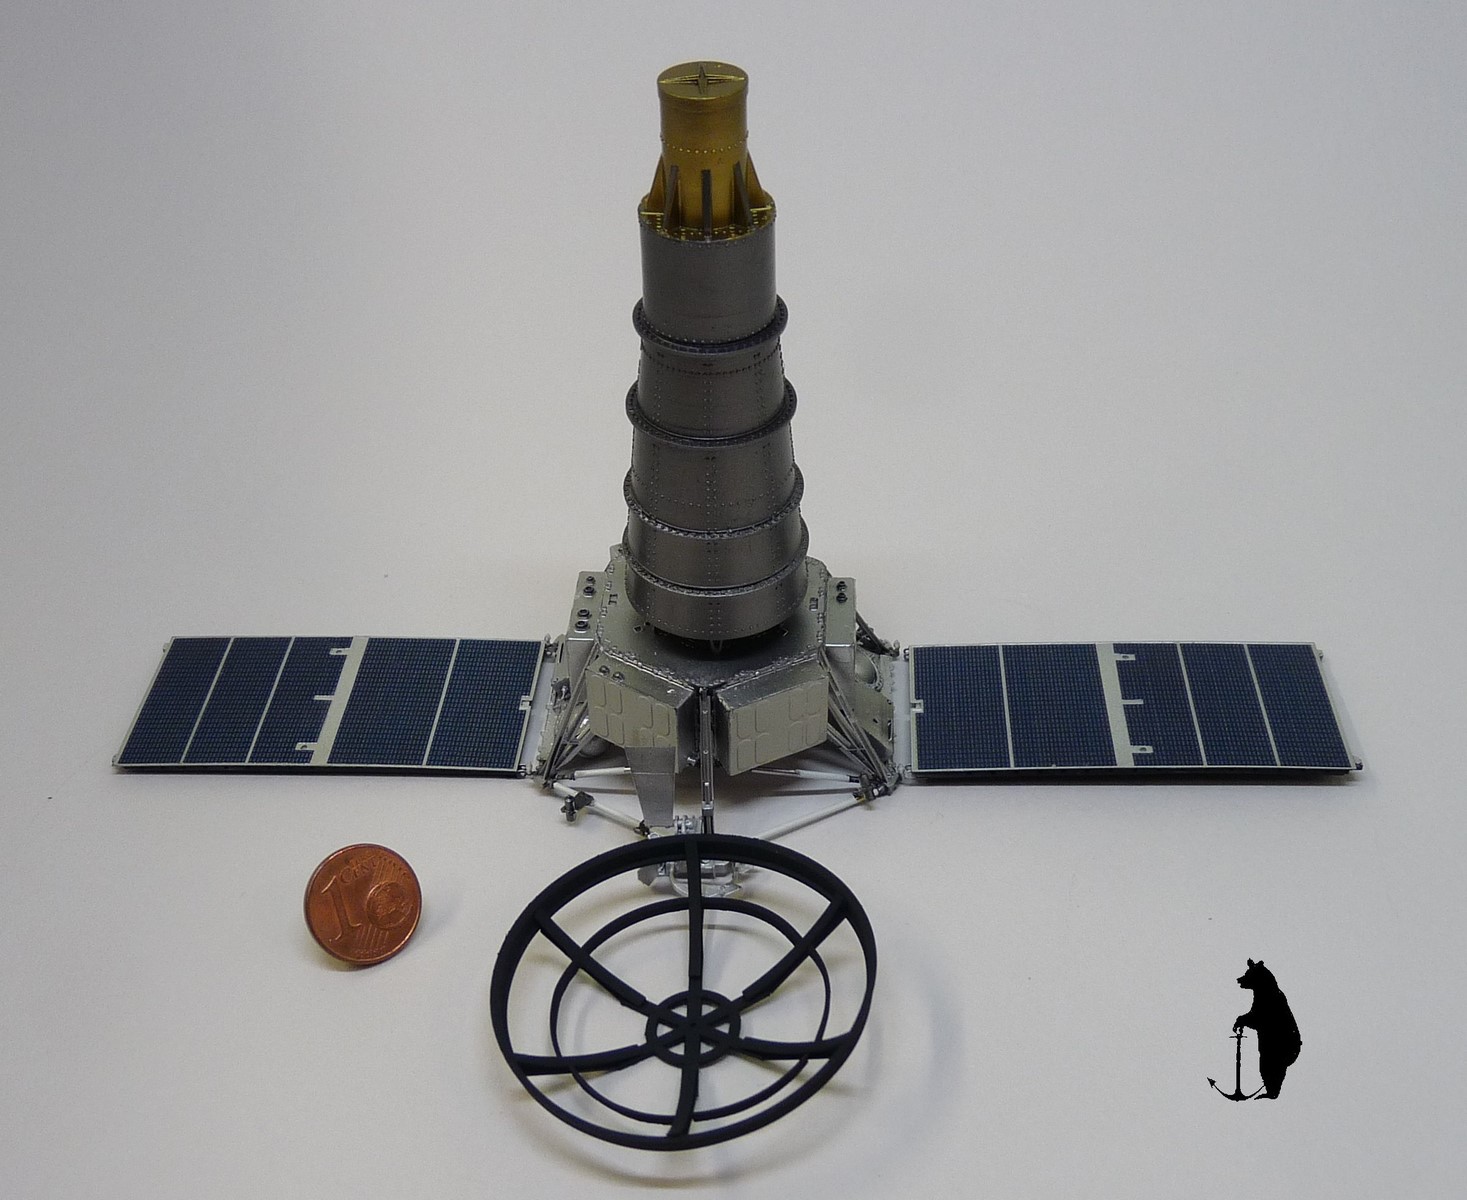 Crash-test planétaire : la sonde lunaire Ranger 8 au 1/24e 17072103235623134915160169